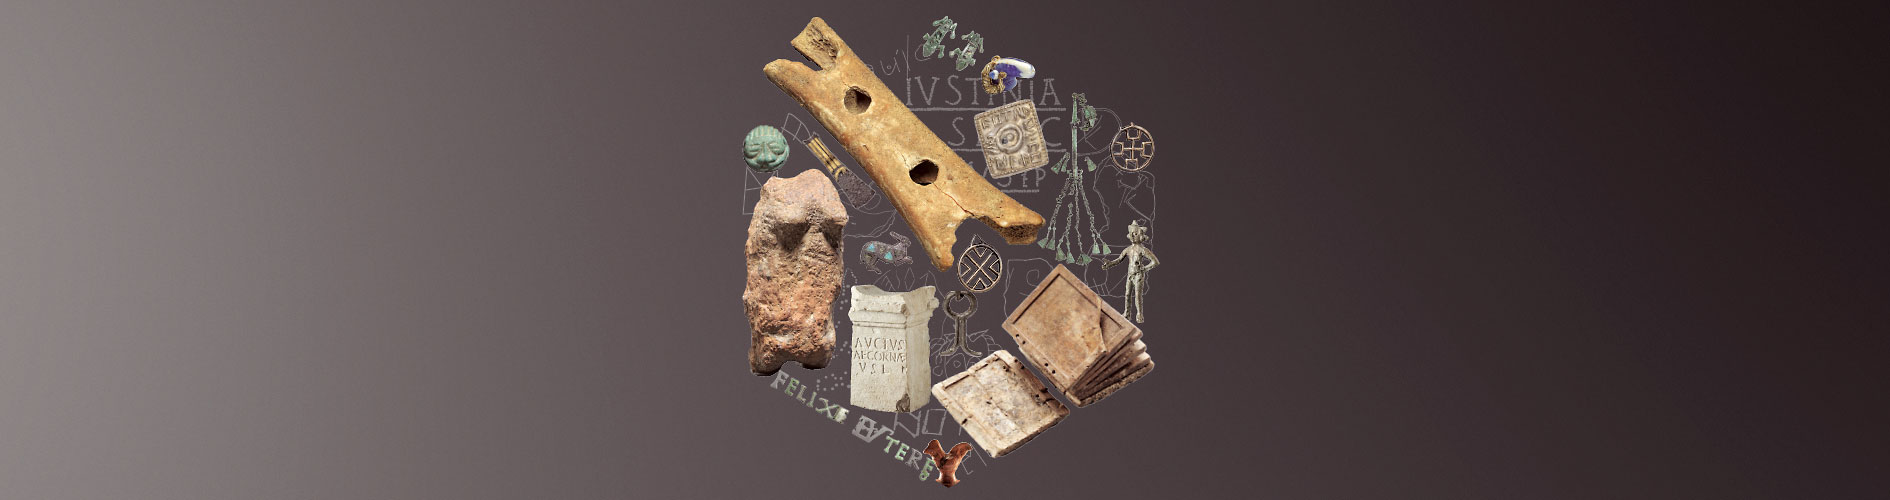 Bild vergrössern: Verschiedene archäologische Objekte wie eine Knochenflöte, Steinfiguren, Schmuck und ein altertümliches Buch zu einem Kreis angeordnet